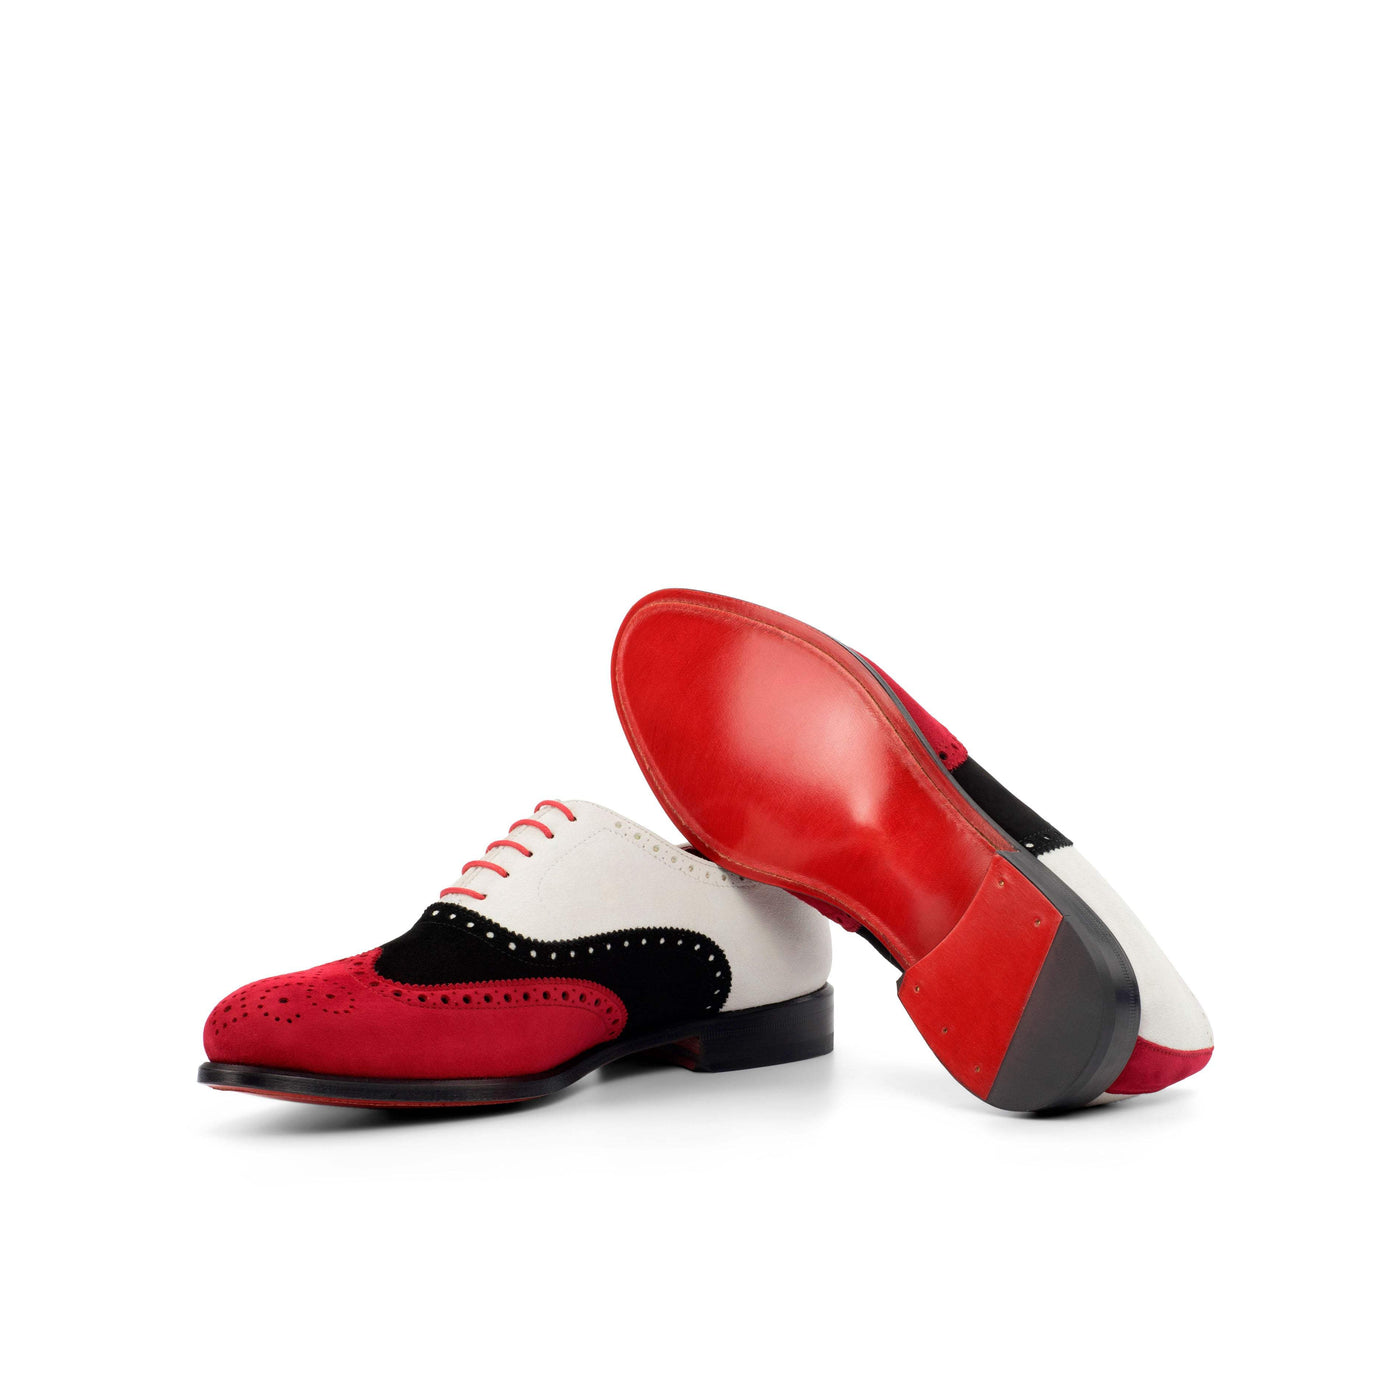 Men's Full Brogue Shoes Leather Red Black 4436 2- MERRIMIUM